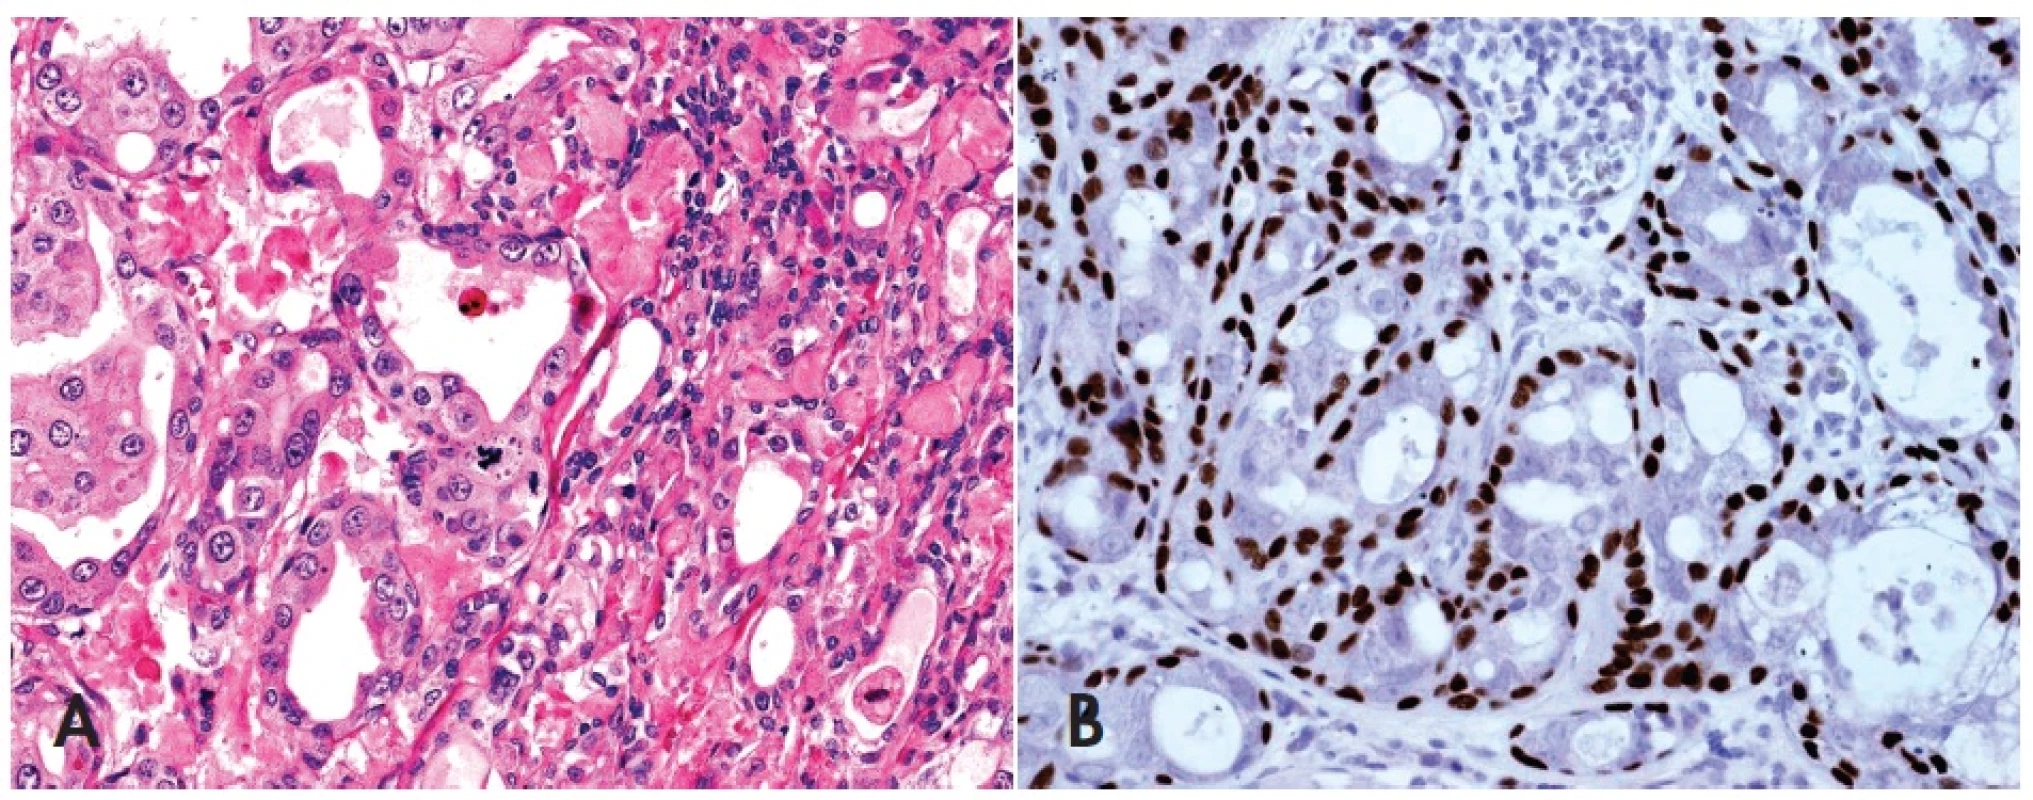 Neinvazivní (in-situ) karcinom ex pleomorfní adenom (PA) neprorůstá přes okraje „ mateřského“ PA, obsahuje atypie, mitózy a vysokou proliferační aktivitu výhradně v luminální duktální vrstvě původního PA se zachovanou intaktní myoepiteliální vrstvou (A), HE, 400x. Imunohistochemická reakce s p63 je pozitivní v abluminální vrstvě původních nenádorových myoepitelií (B), 400x.